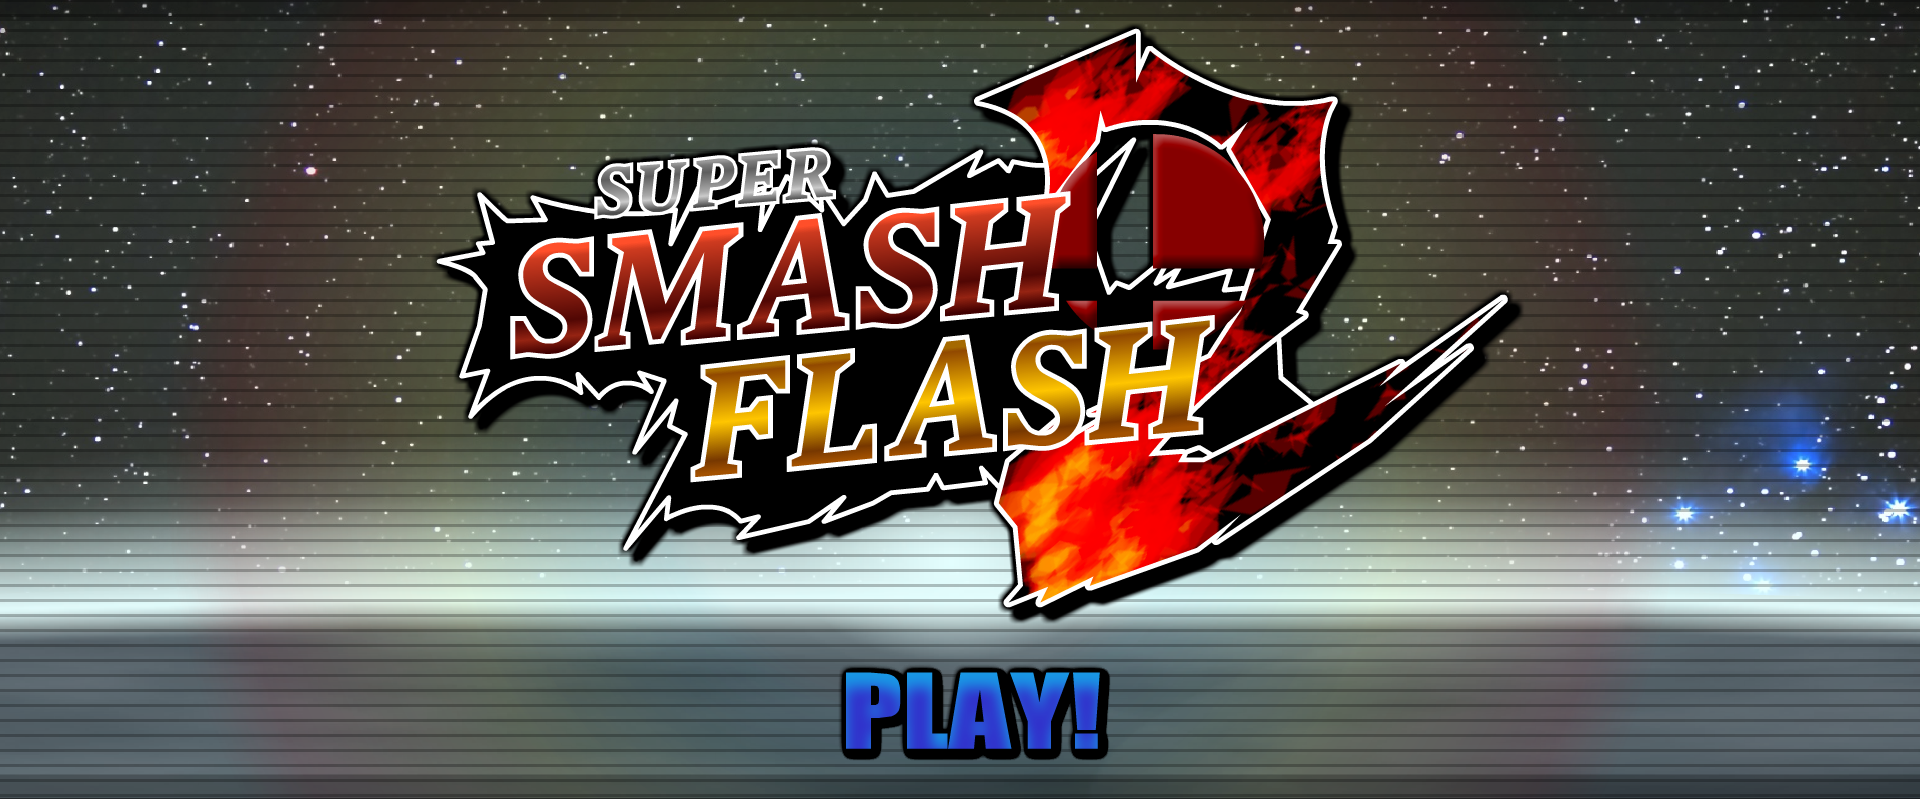 Super Smash Flash 2 - Download